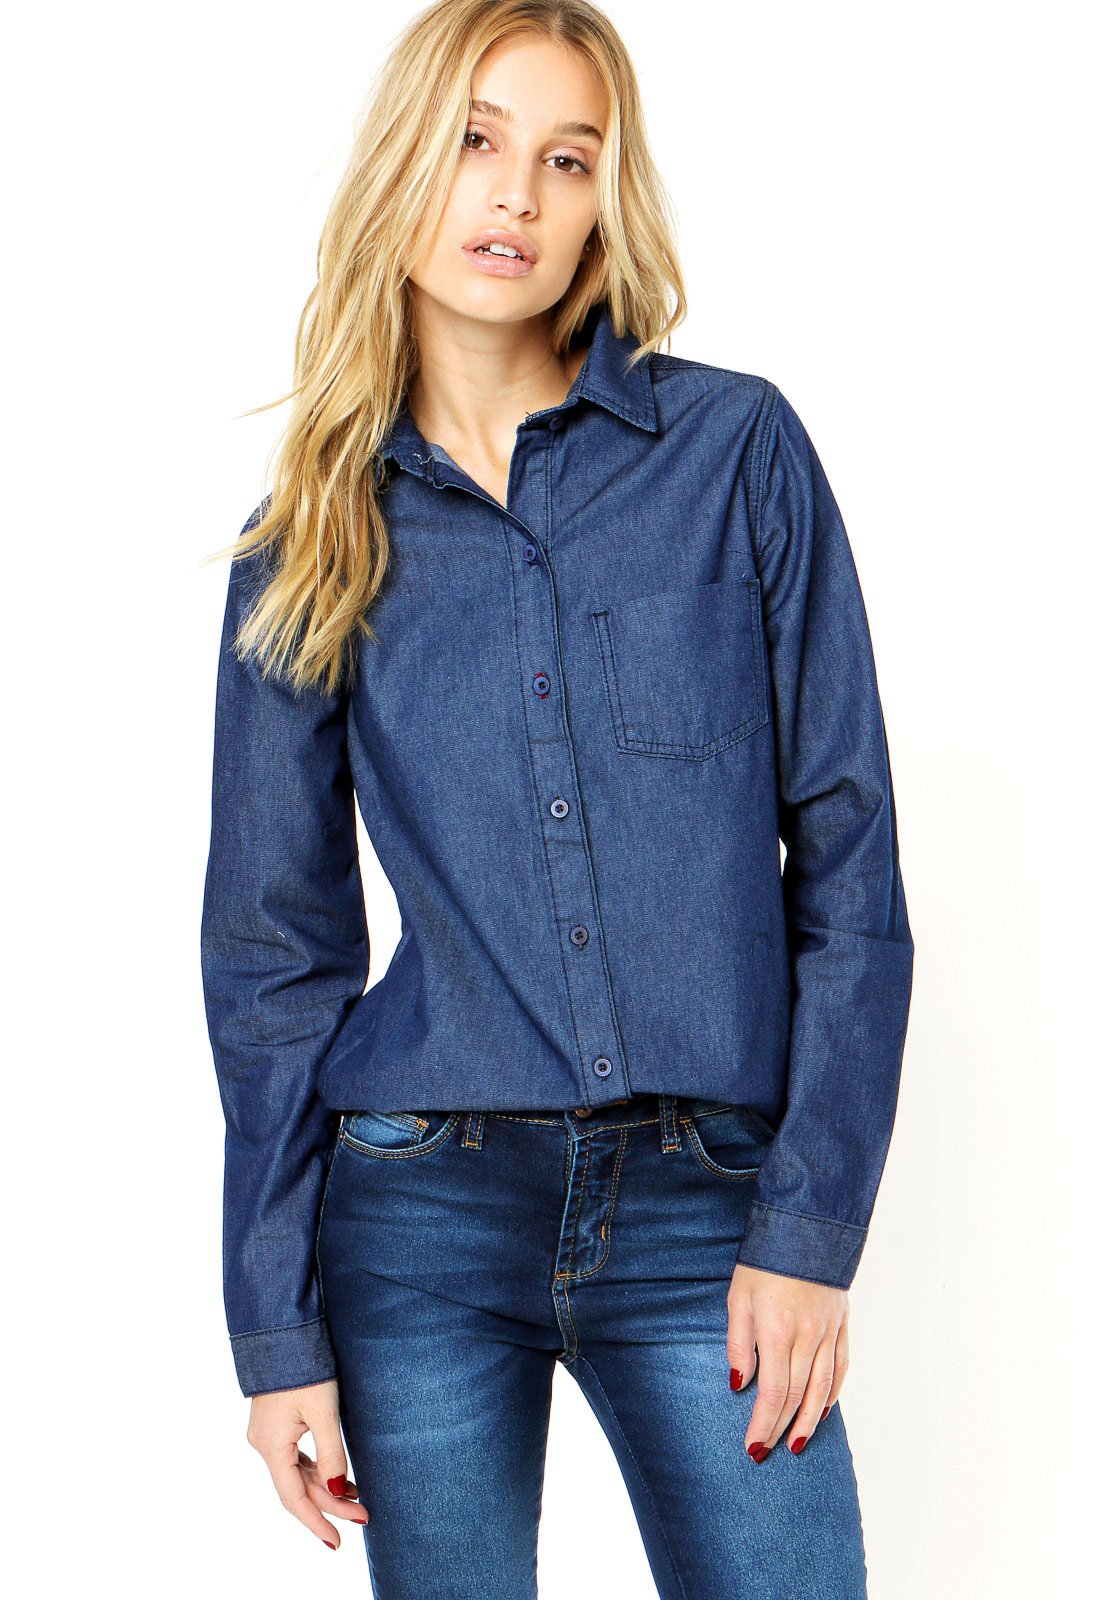 dafiti camisa jeans feminina